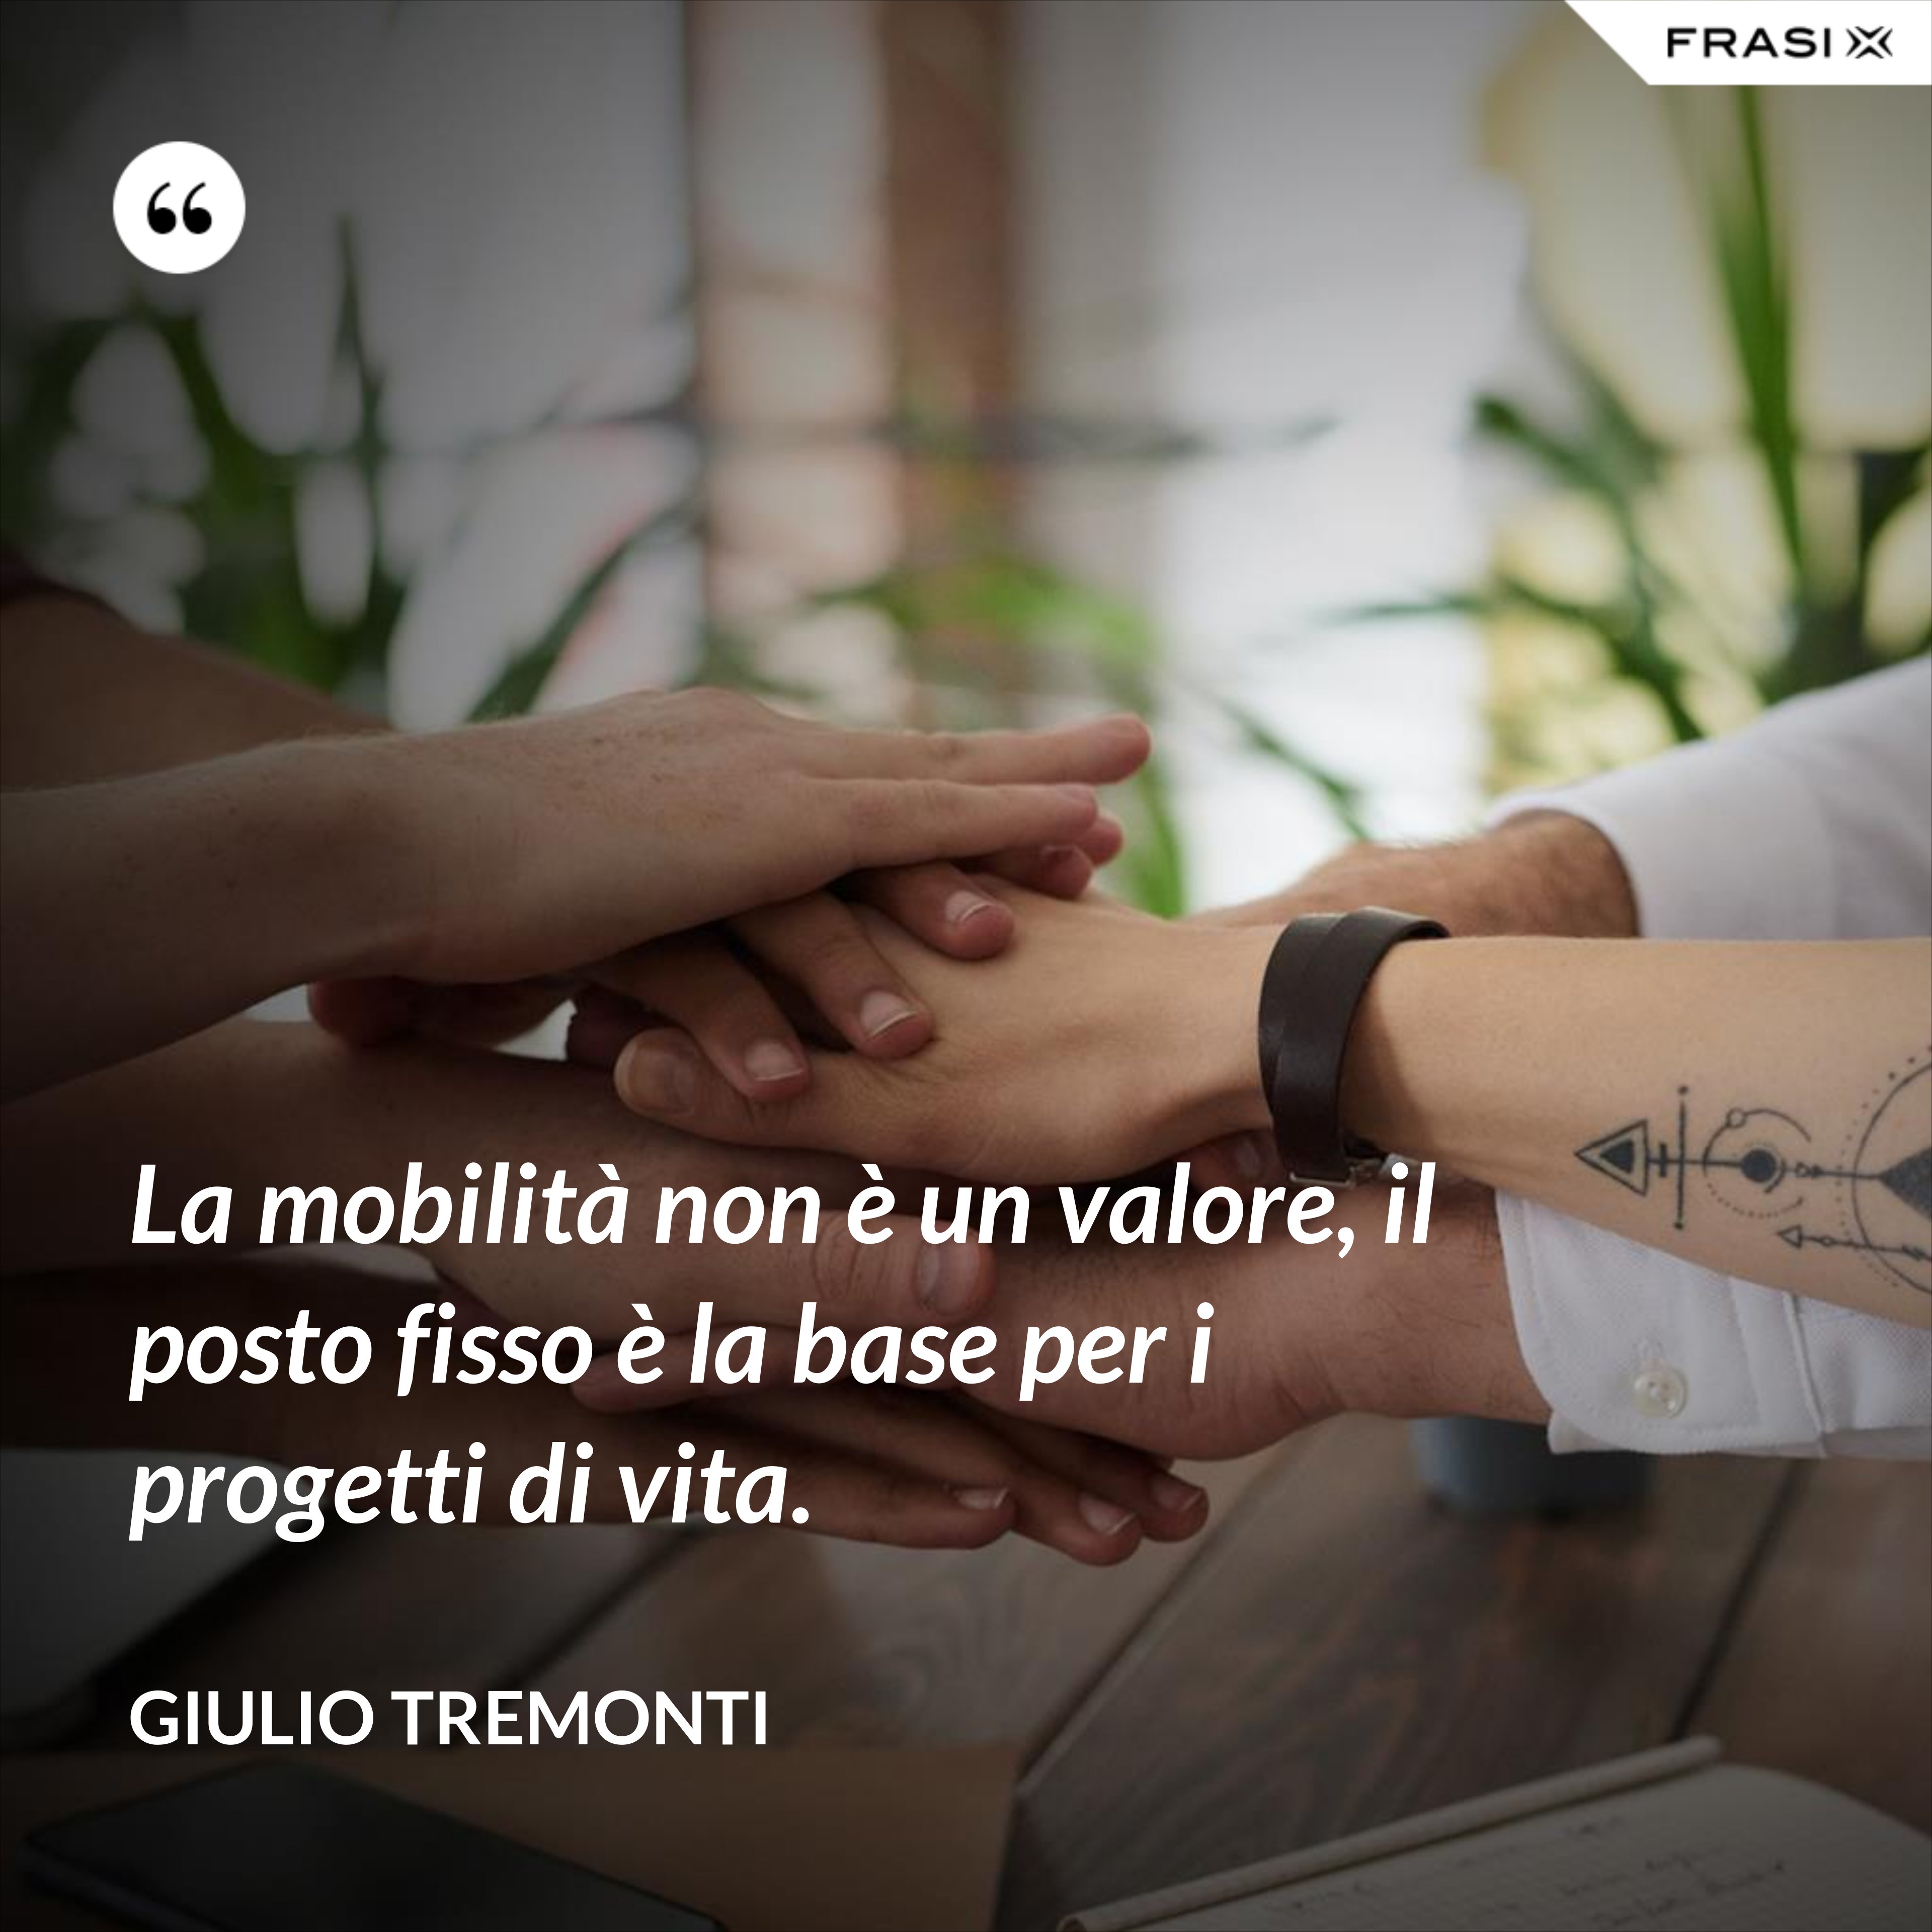 La mobilità non è un valore, il posto fisso è la base per i progetti di vita. - Giulio Tremonti